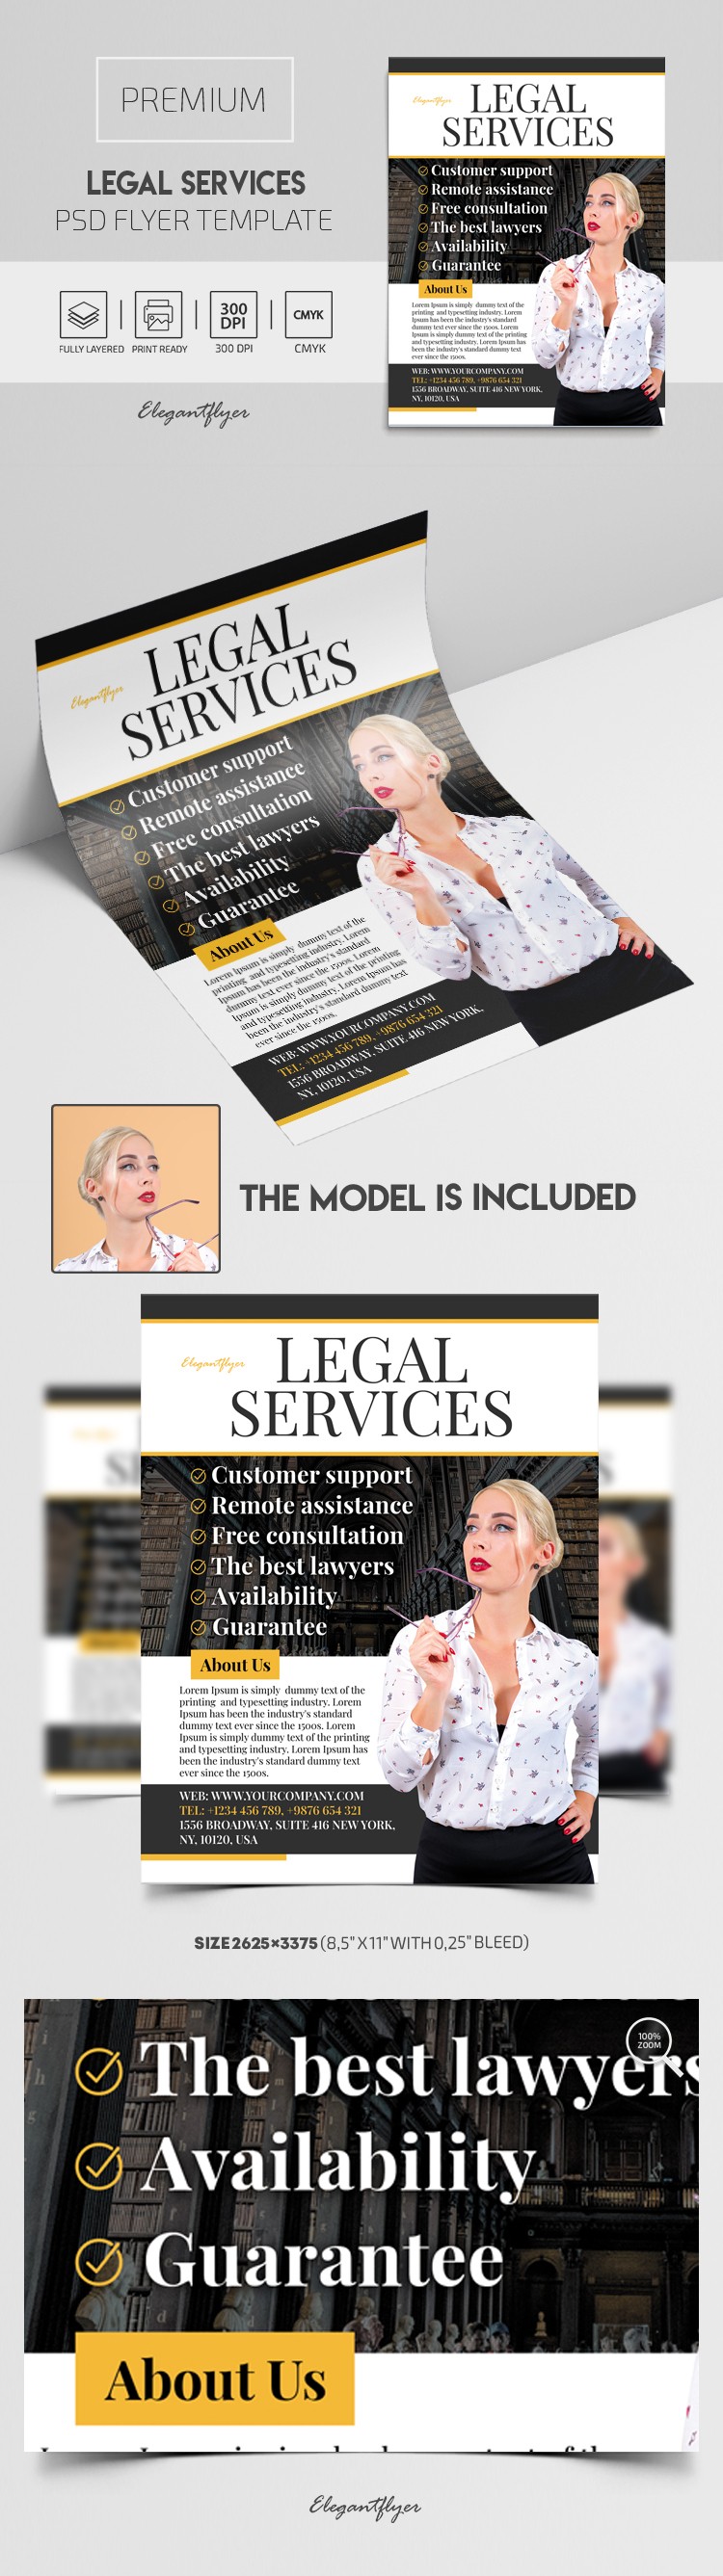 Legal Services Flyer by ElegantFlyer